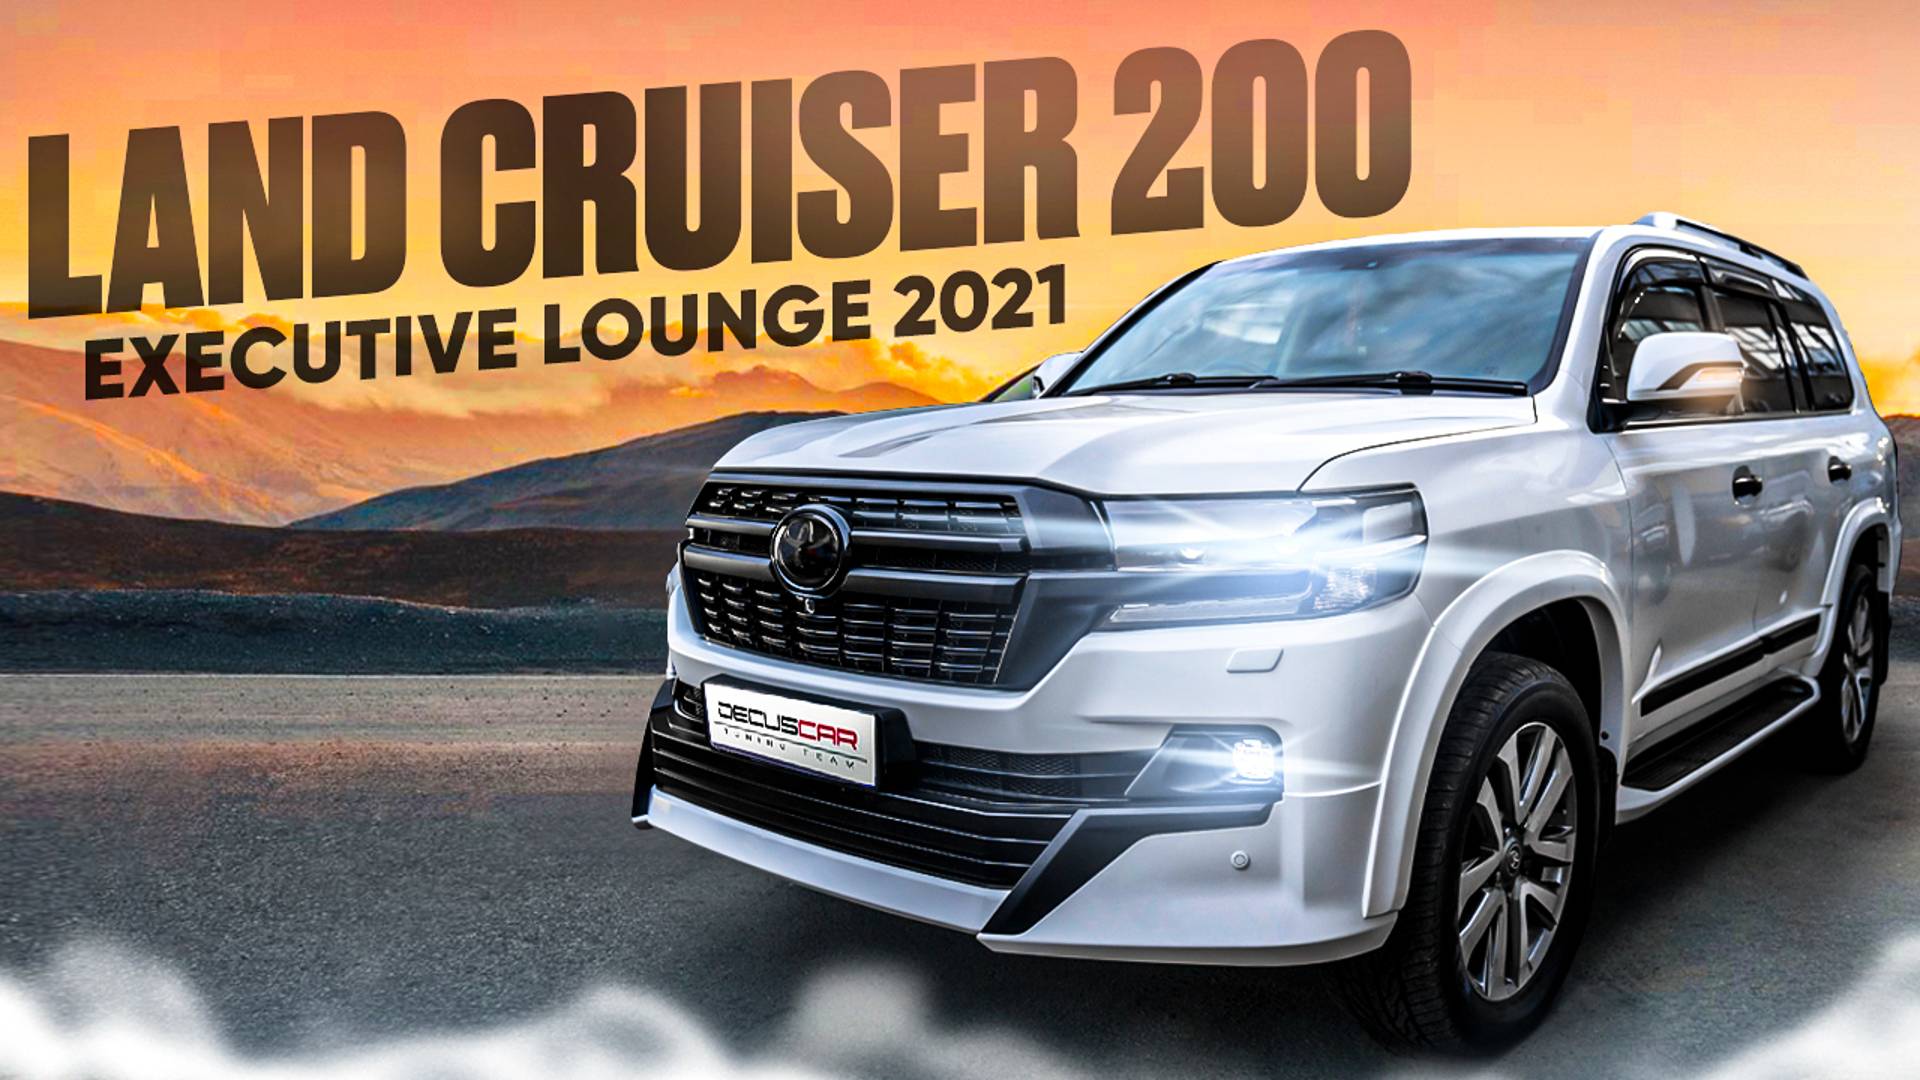 Рестайлинг Toyota Land Cruiser 200 в Executive Lounge 2021